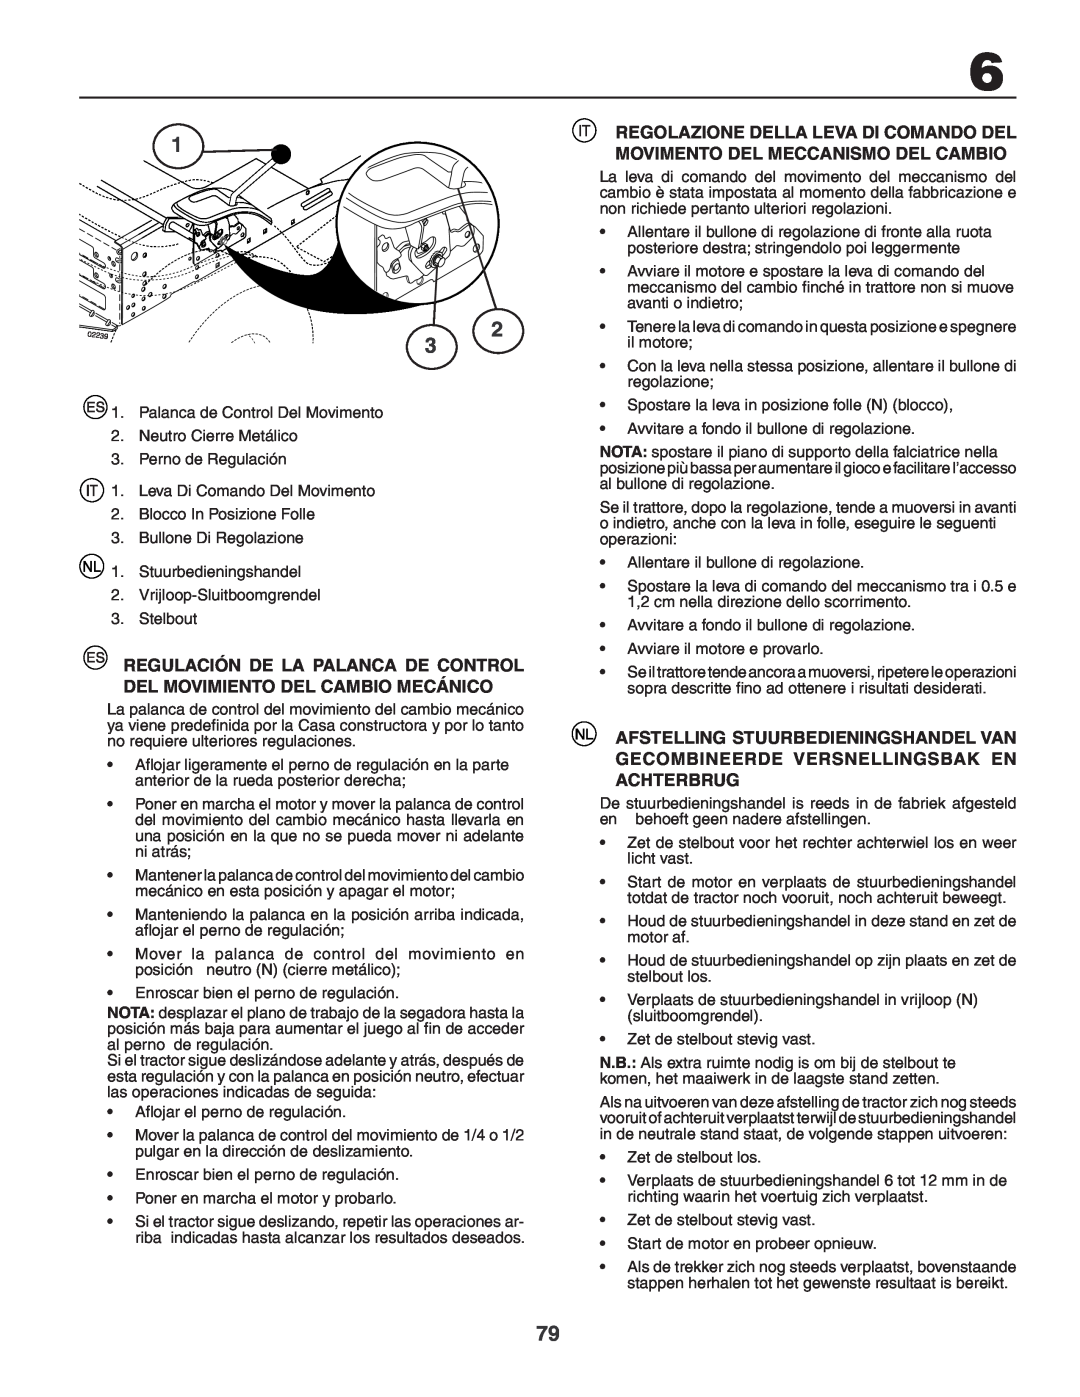 Husqvarna CTH210xp, CTH150 XP instruction manual Regulación De La Palanca De Control Del Movimiento Del Cambio Mecánico 